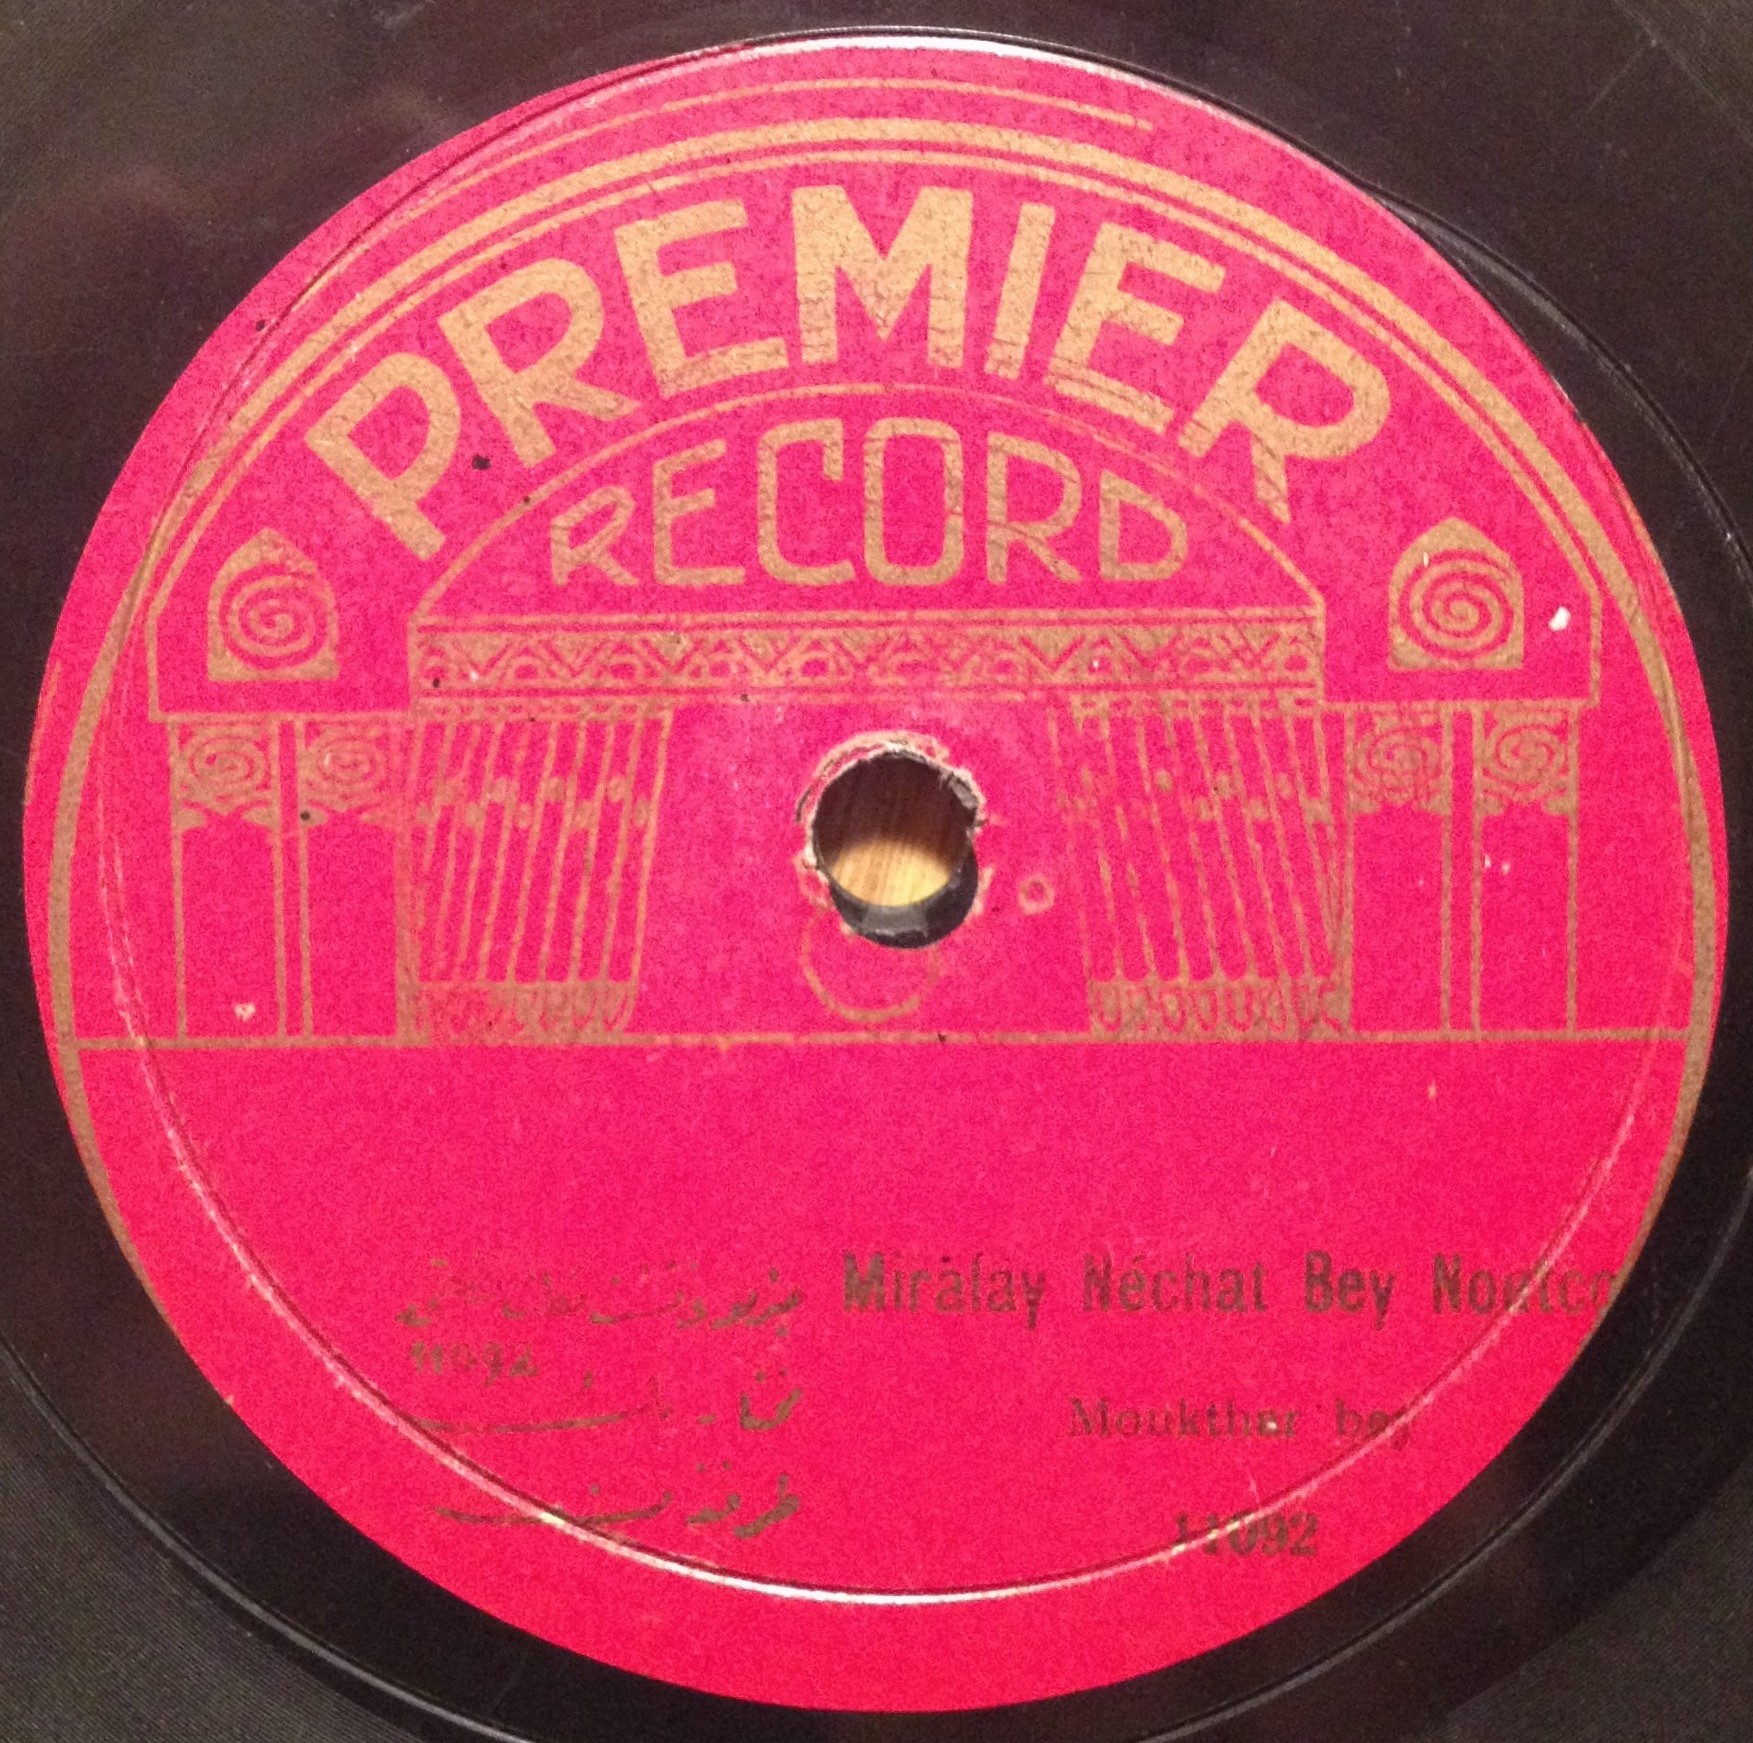 PREMIER RECORD label 11092